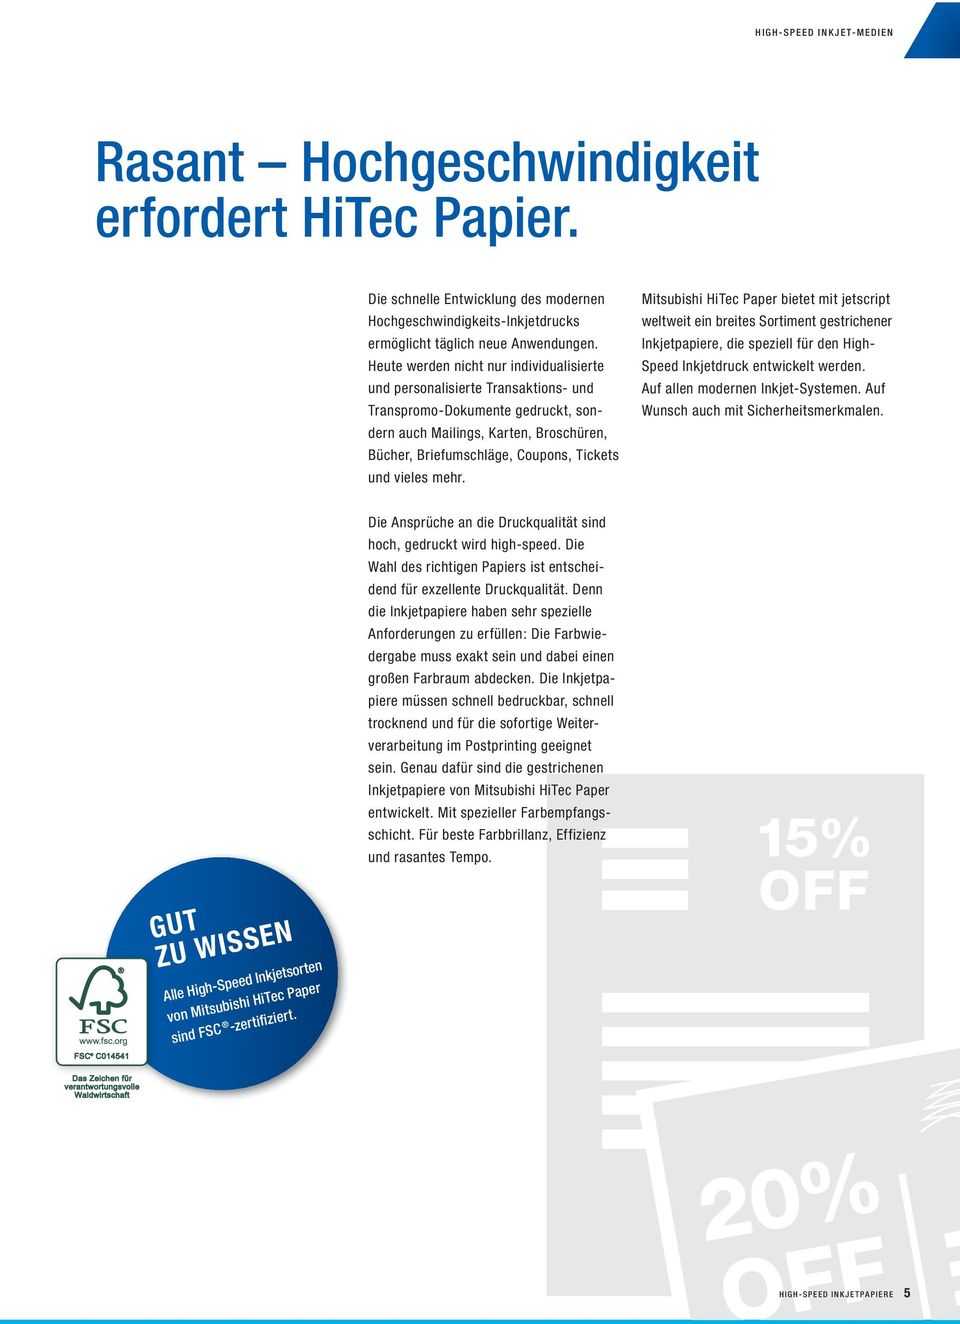 vieles mehr. Mitsubishi HiTec Paper bietet mit jetscript weltweit ein breites Sortiment gestrichener Inkjetpapiere, die speziell für den High- Speed Inkjetdruck entwickelt werden.